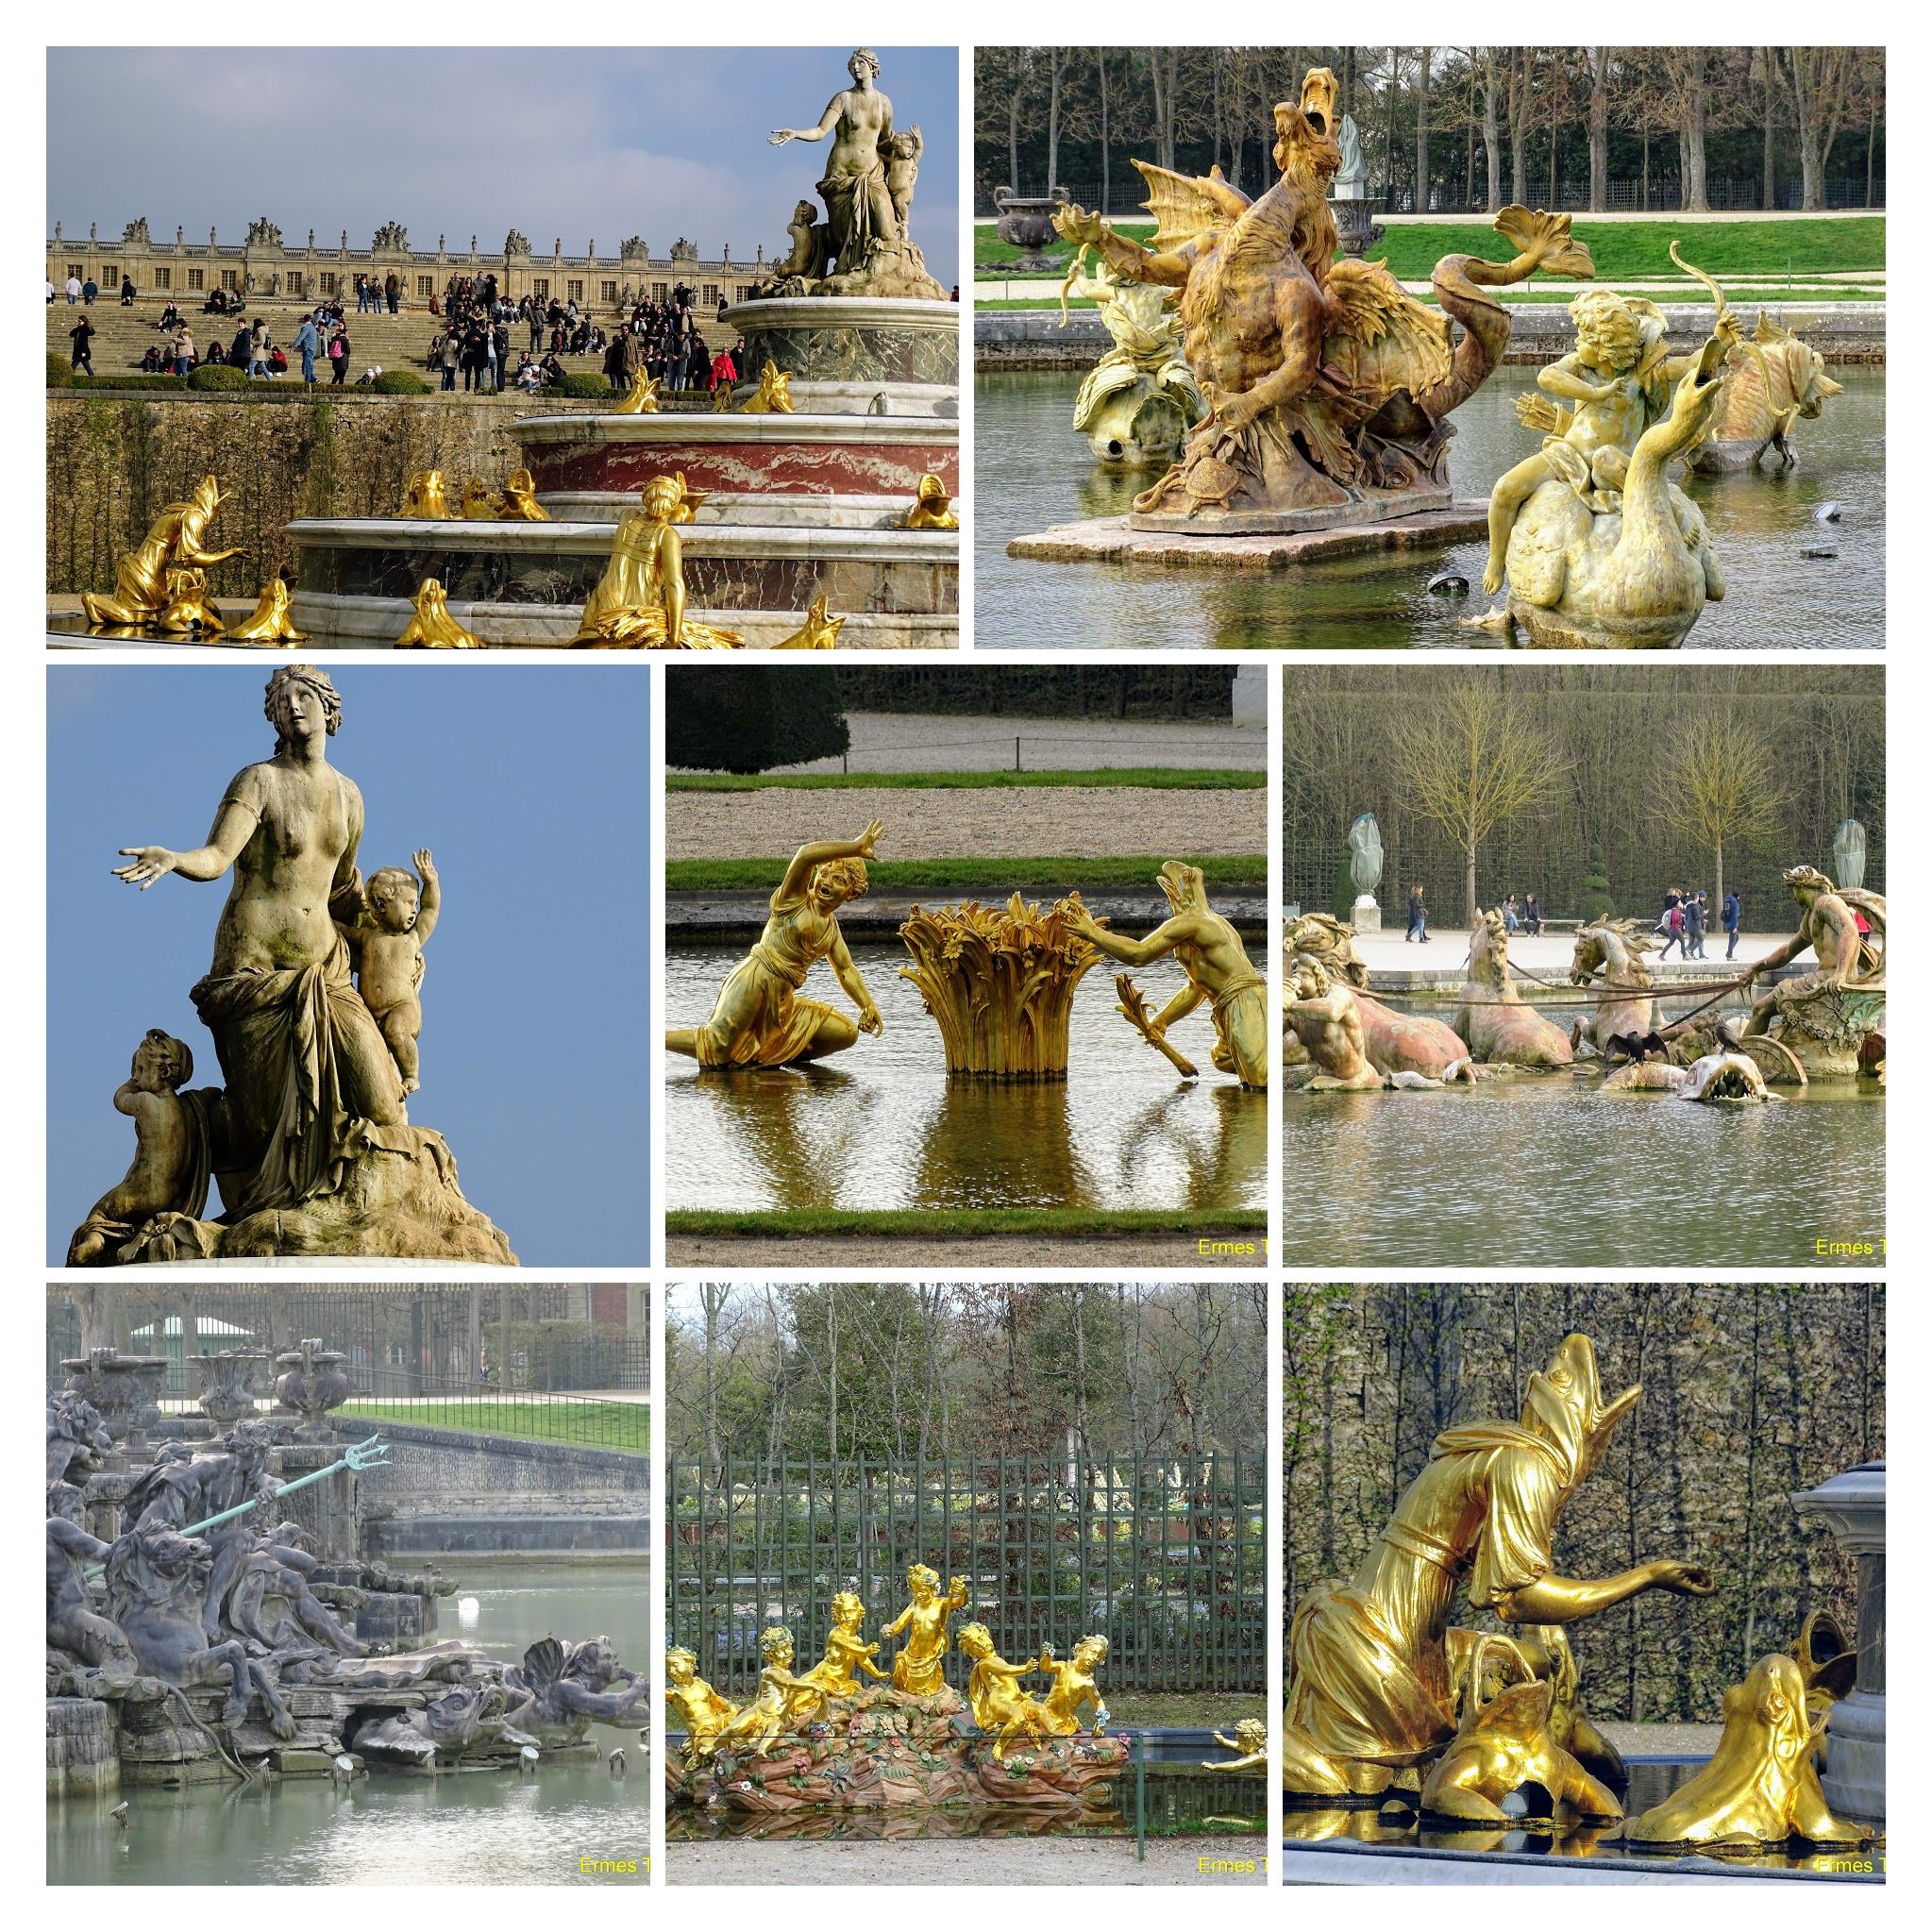 Caption: Fountains de Versailles - Photo Credit: Local Guide @ermest